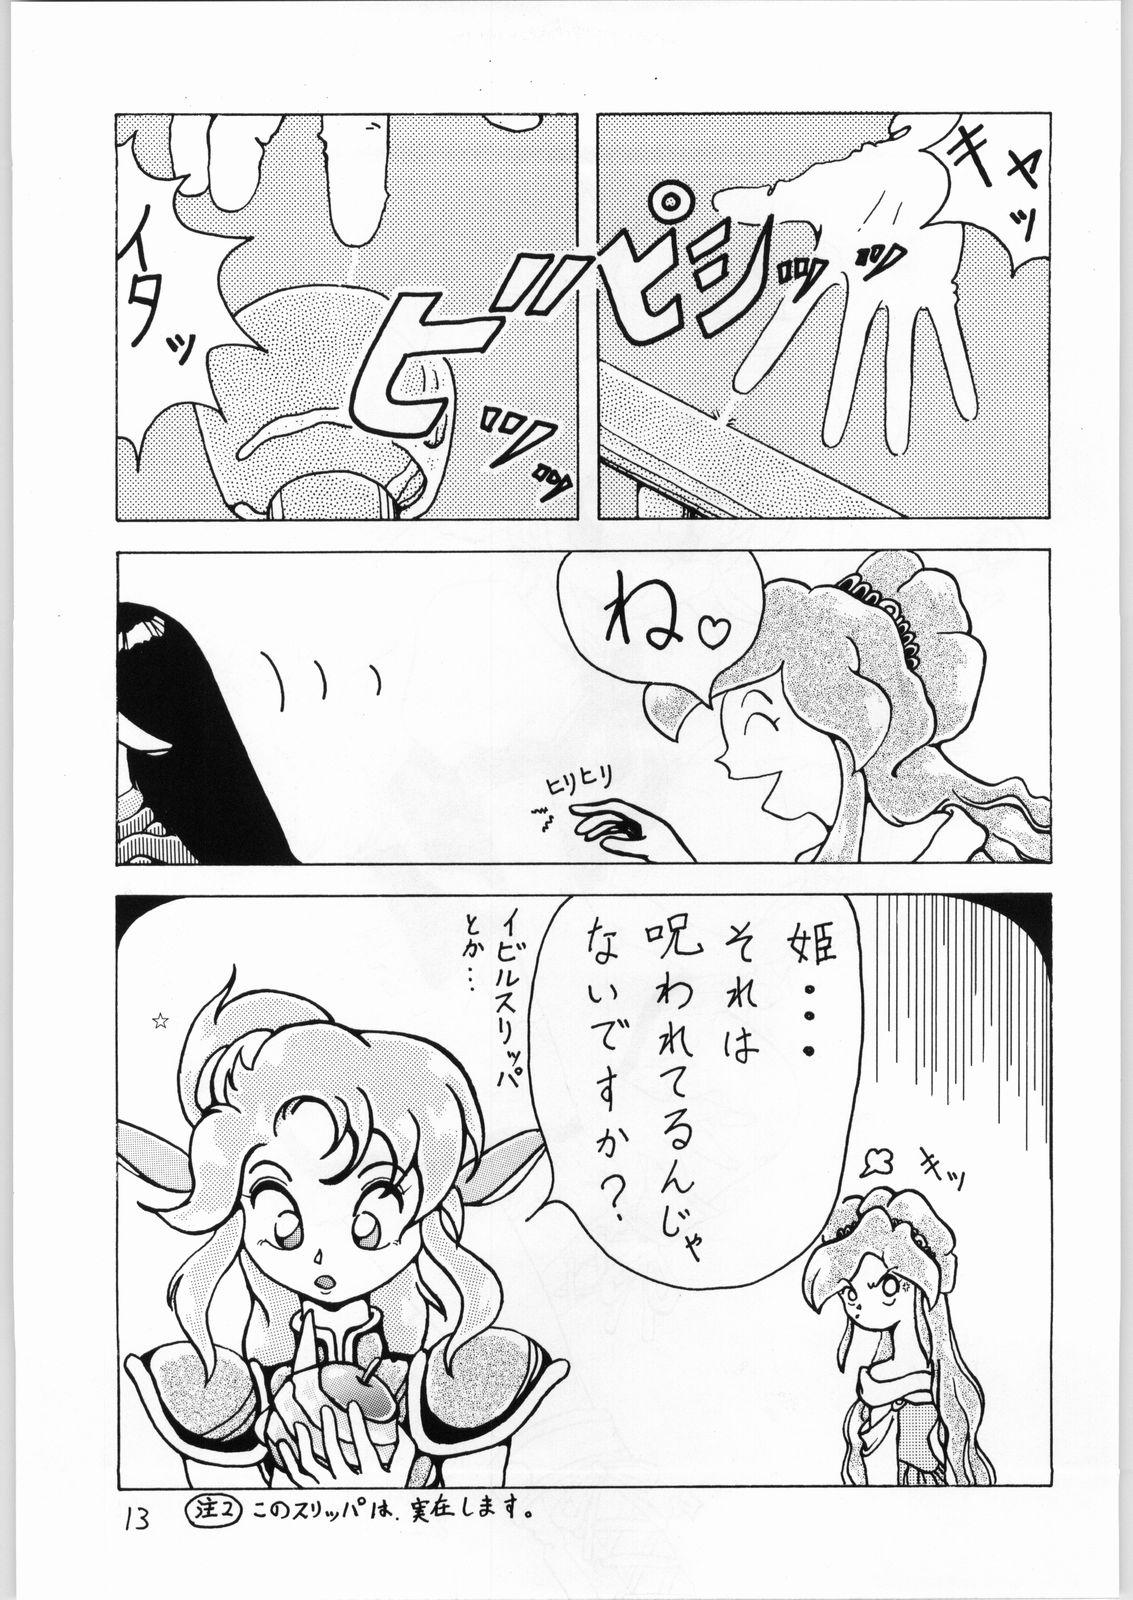 Putita Dance of Princess 3 - Sailor moon Tenchi muyo Akazukin cha cha Minky momo Ng knight lamune and 40 Stroking - Page 12